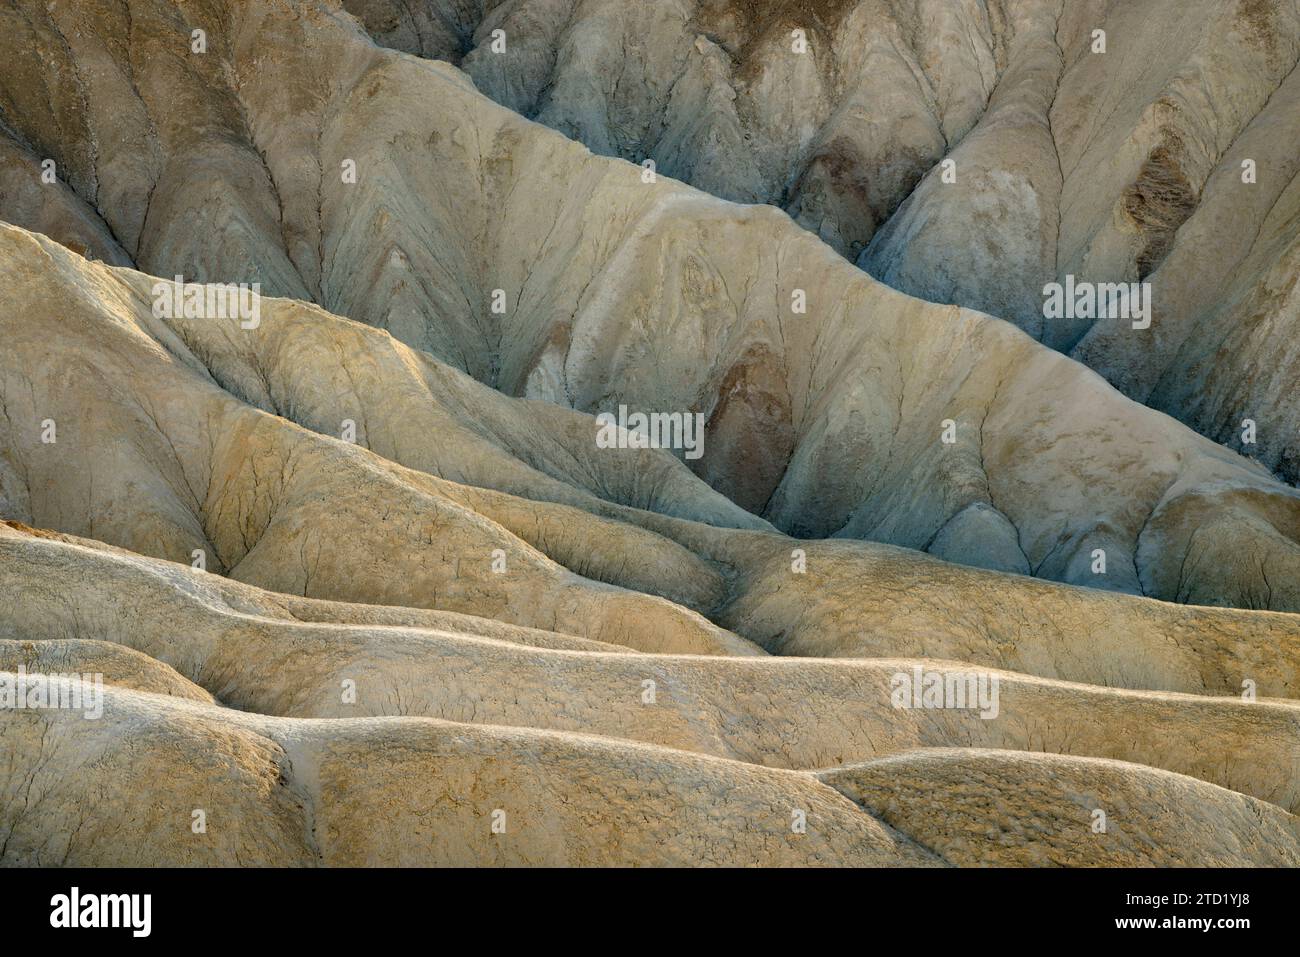 Badlands siltstone de la formation de Furnace Creek en dessous de Zabriskie point dans le parc national de Death Valley, Californie. Banque D'Images